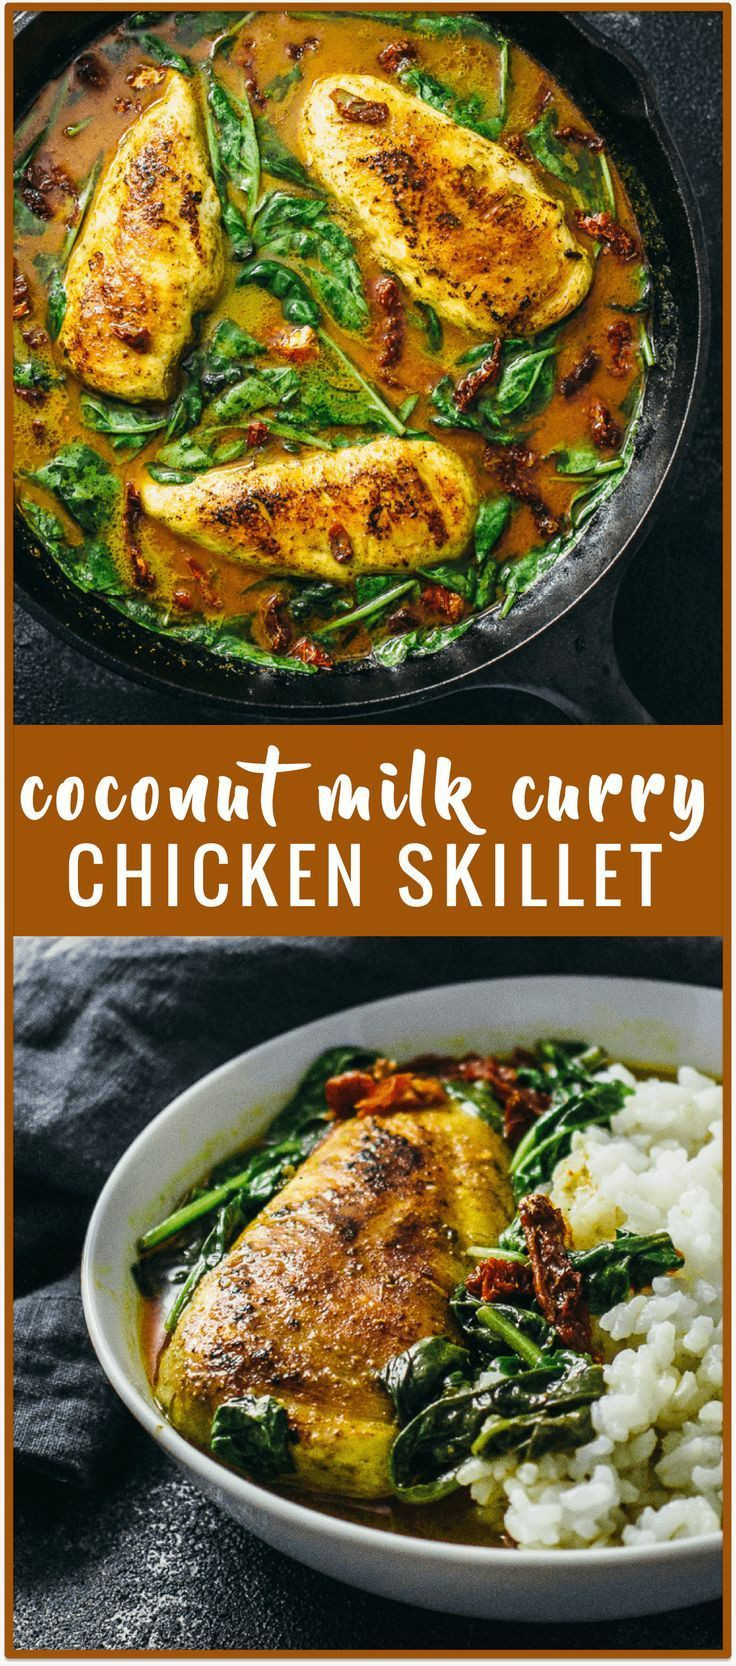 Thai Chicken Recipes With Coconut Milk
 Chicken skillet with coconut milk curry recipe This